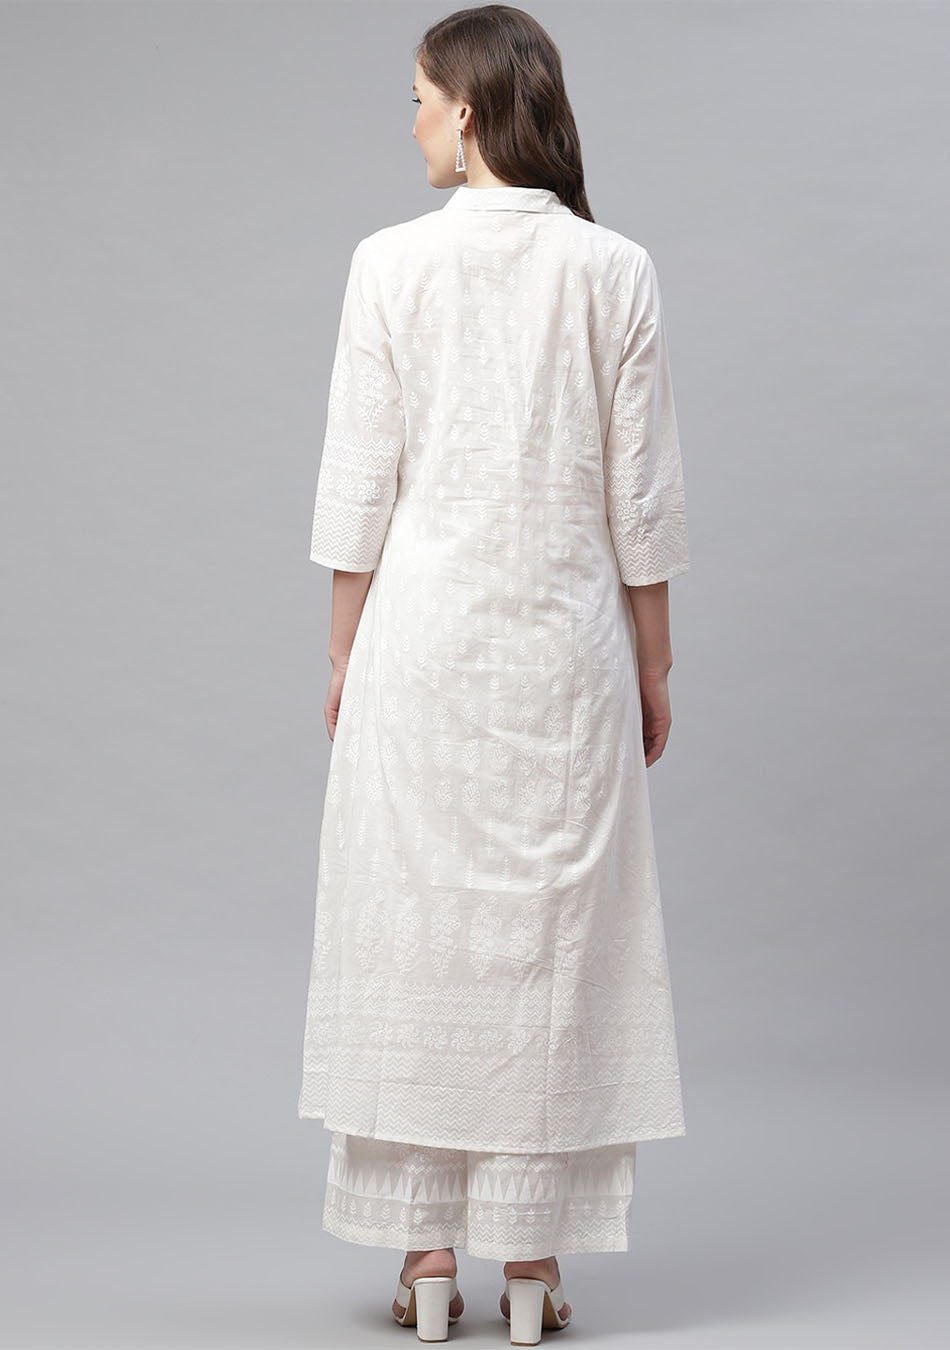 womens pure cotton printed straight kurti And palazzo set - Doriyaan -  4132487